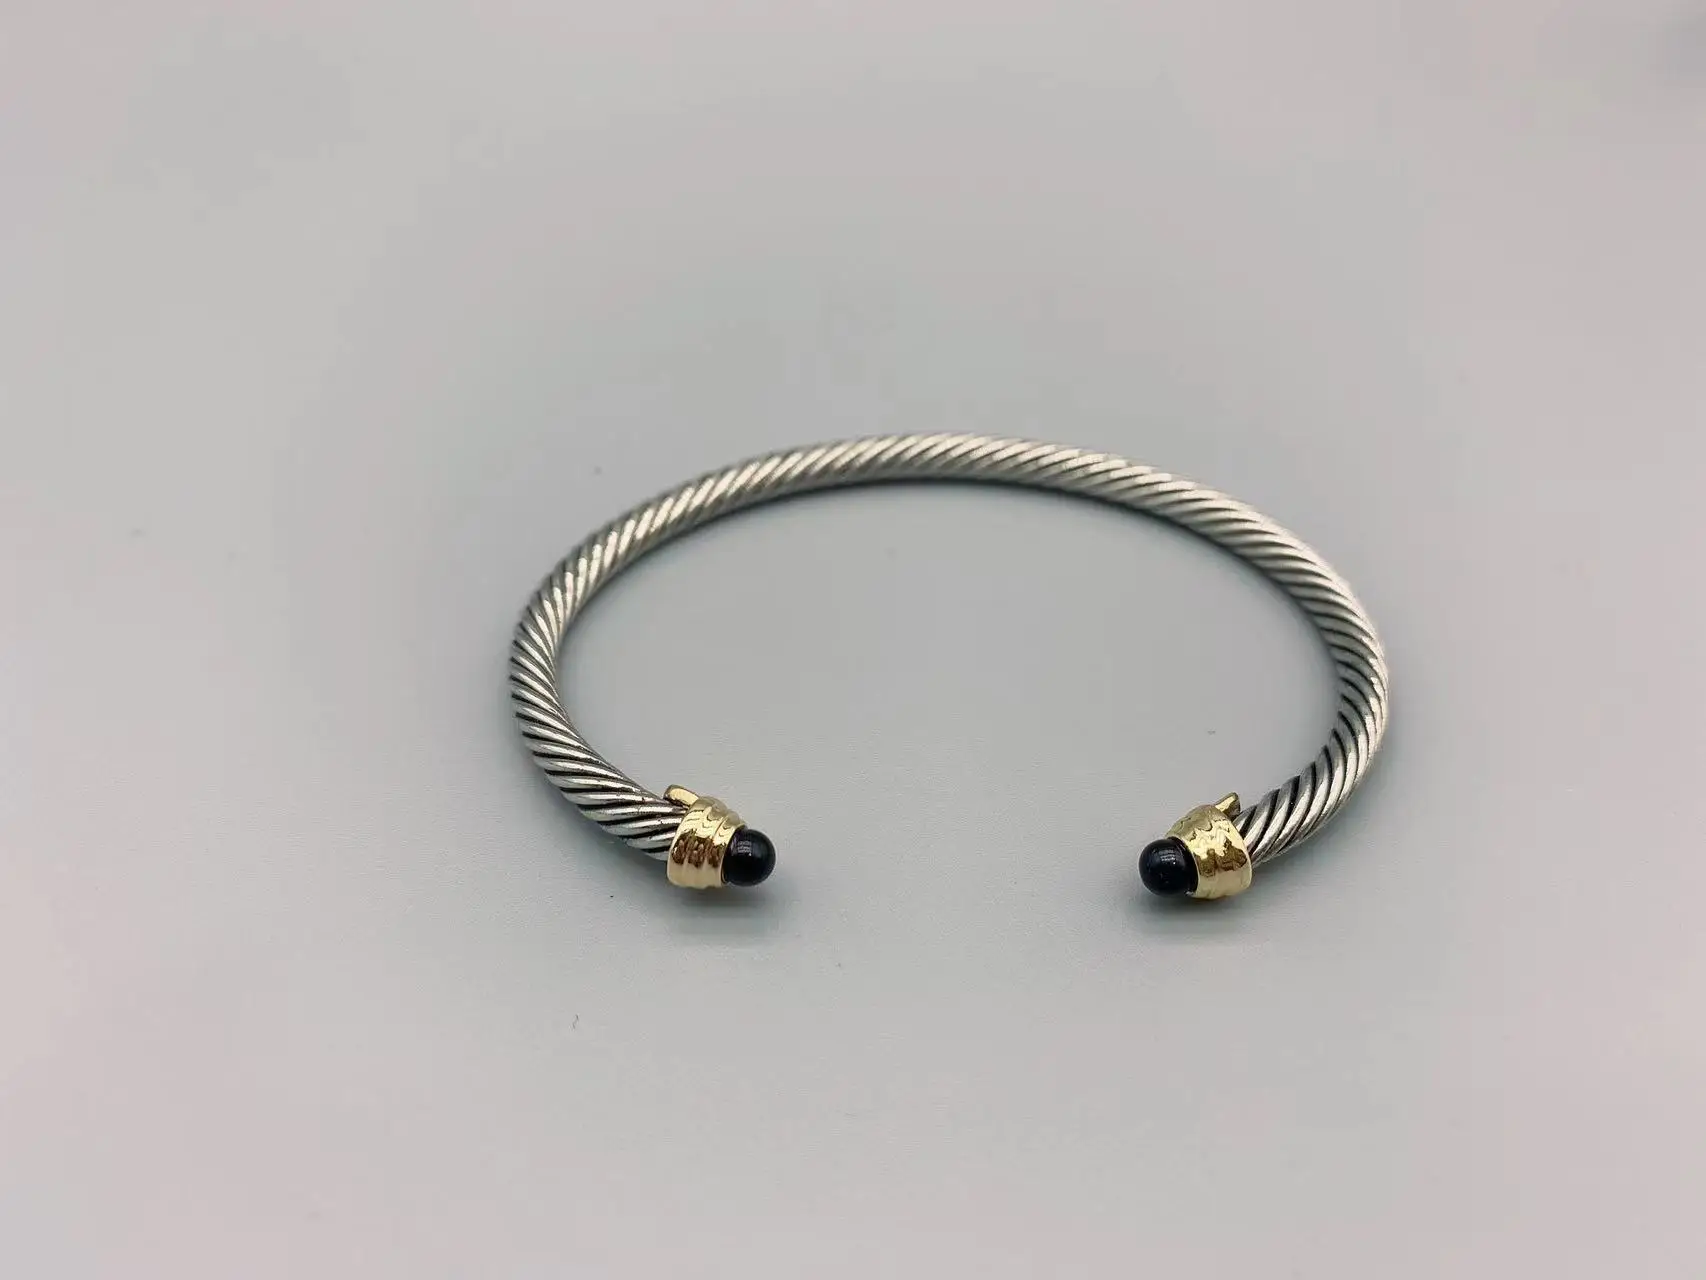 

Браслет Le Han Jewelry Cable Classica с жемчужными бусинами и покрытием из 18-каратного золота, 3 мм